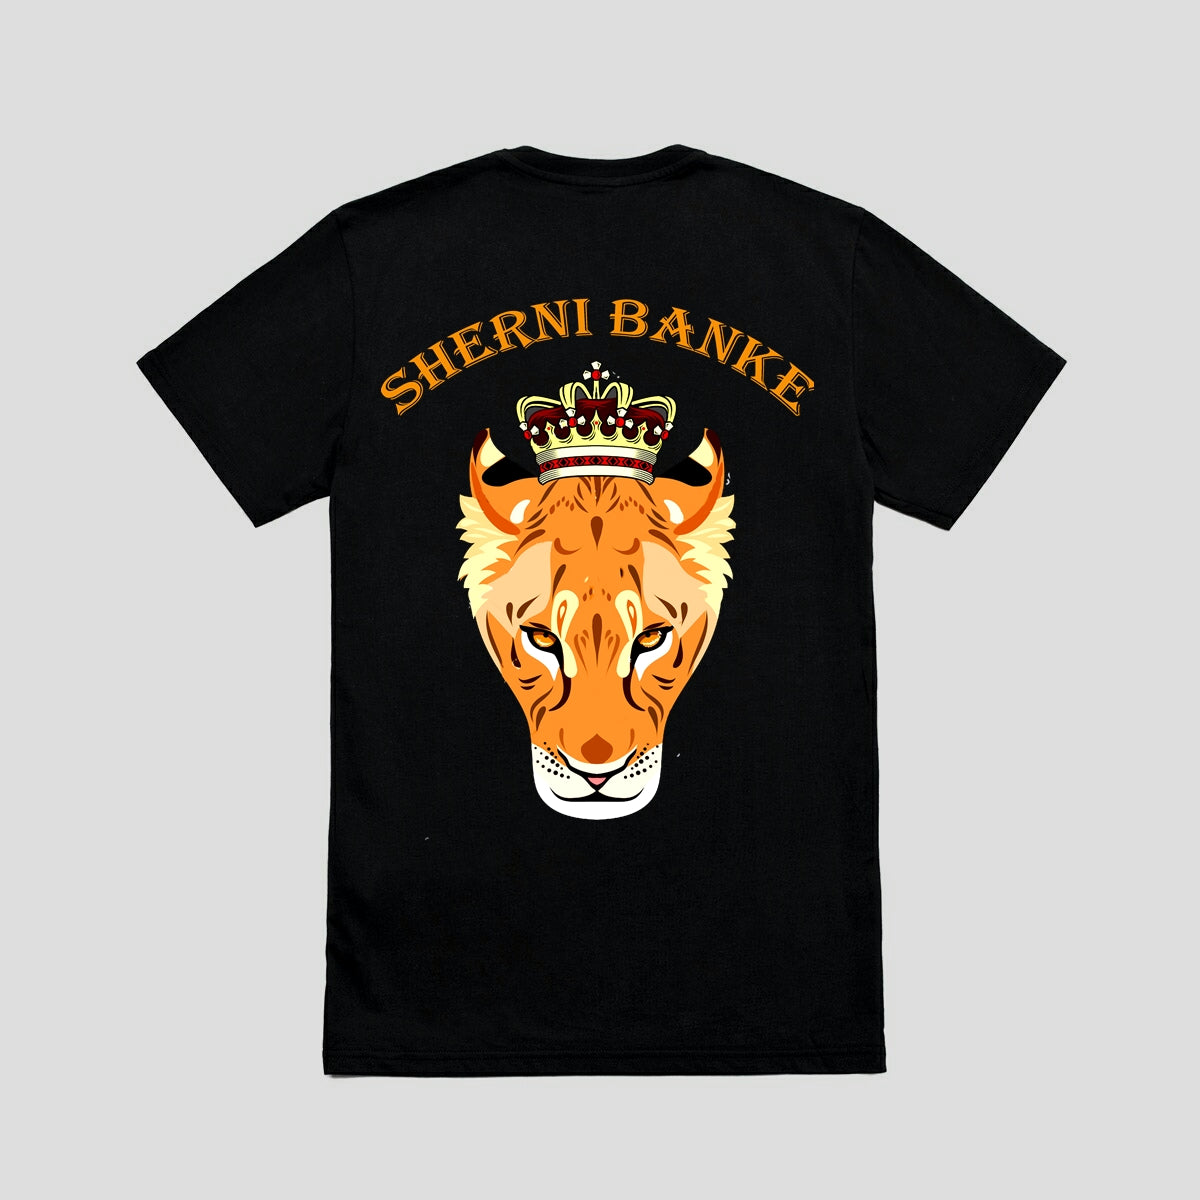 Sherni BanKe T-Shirt